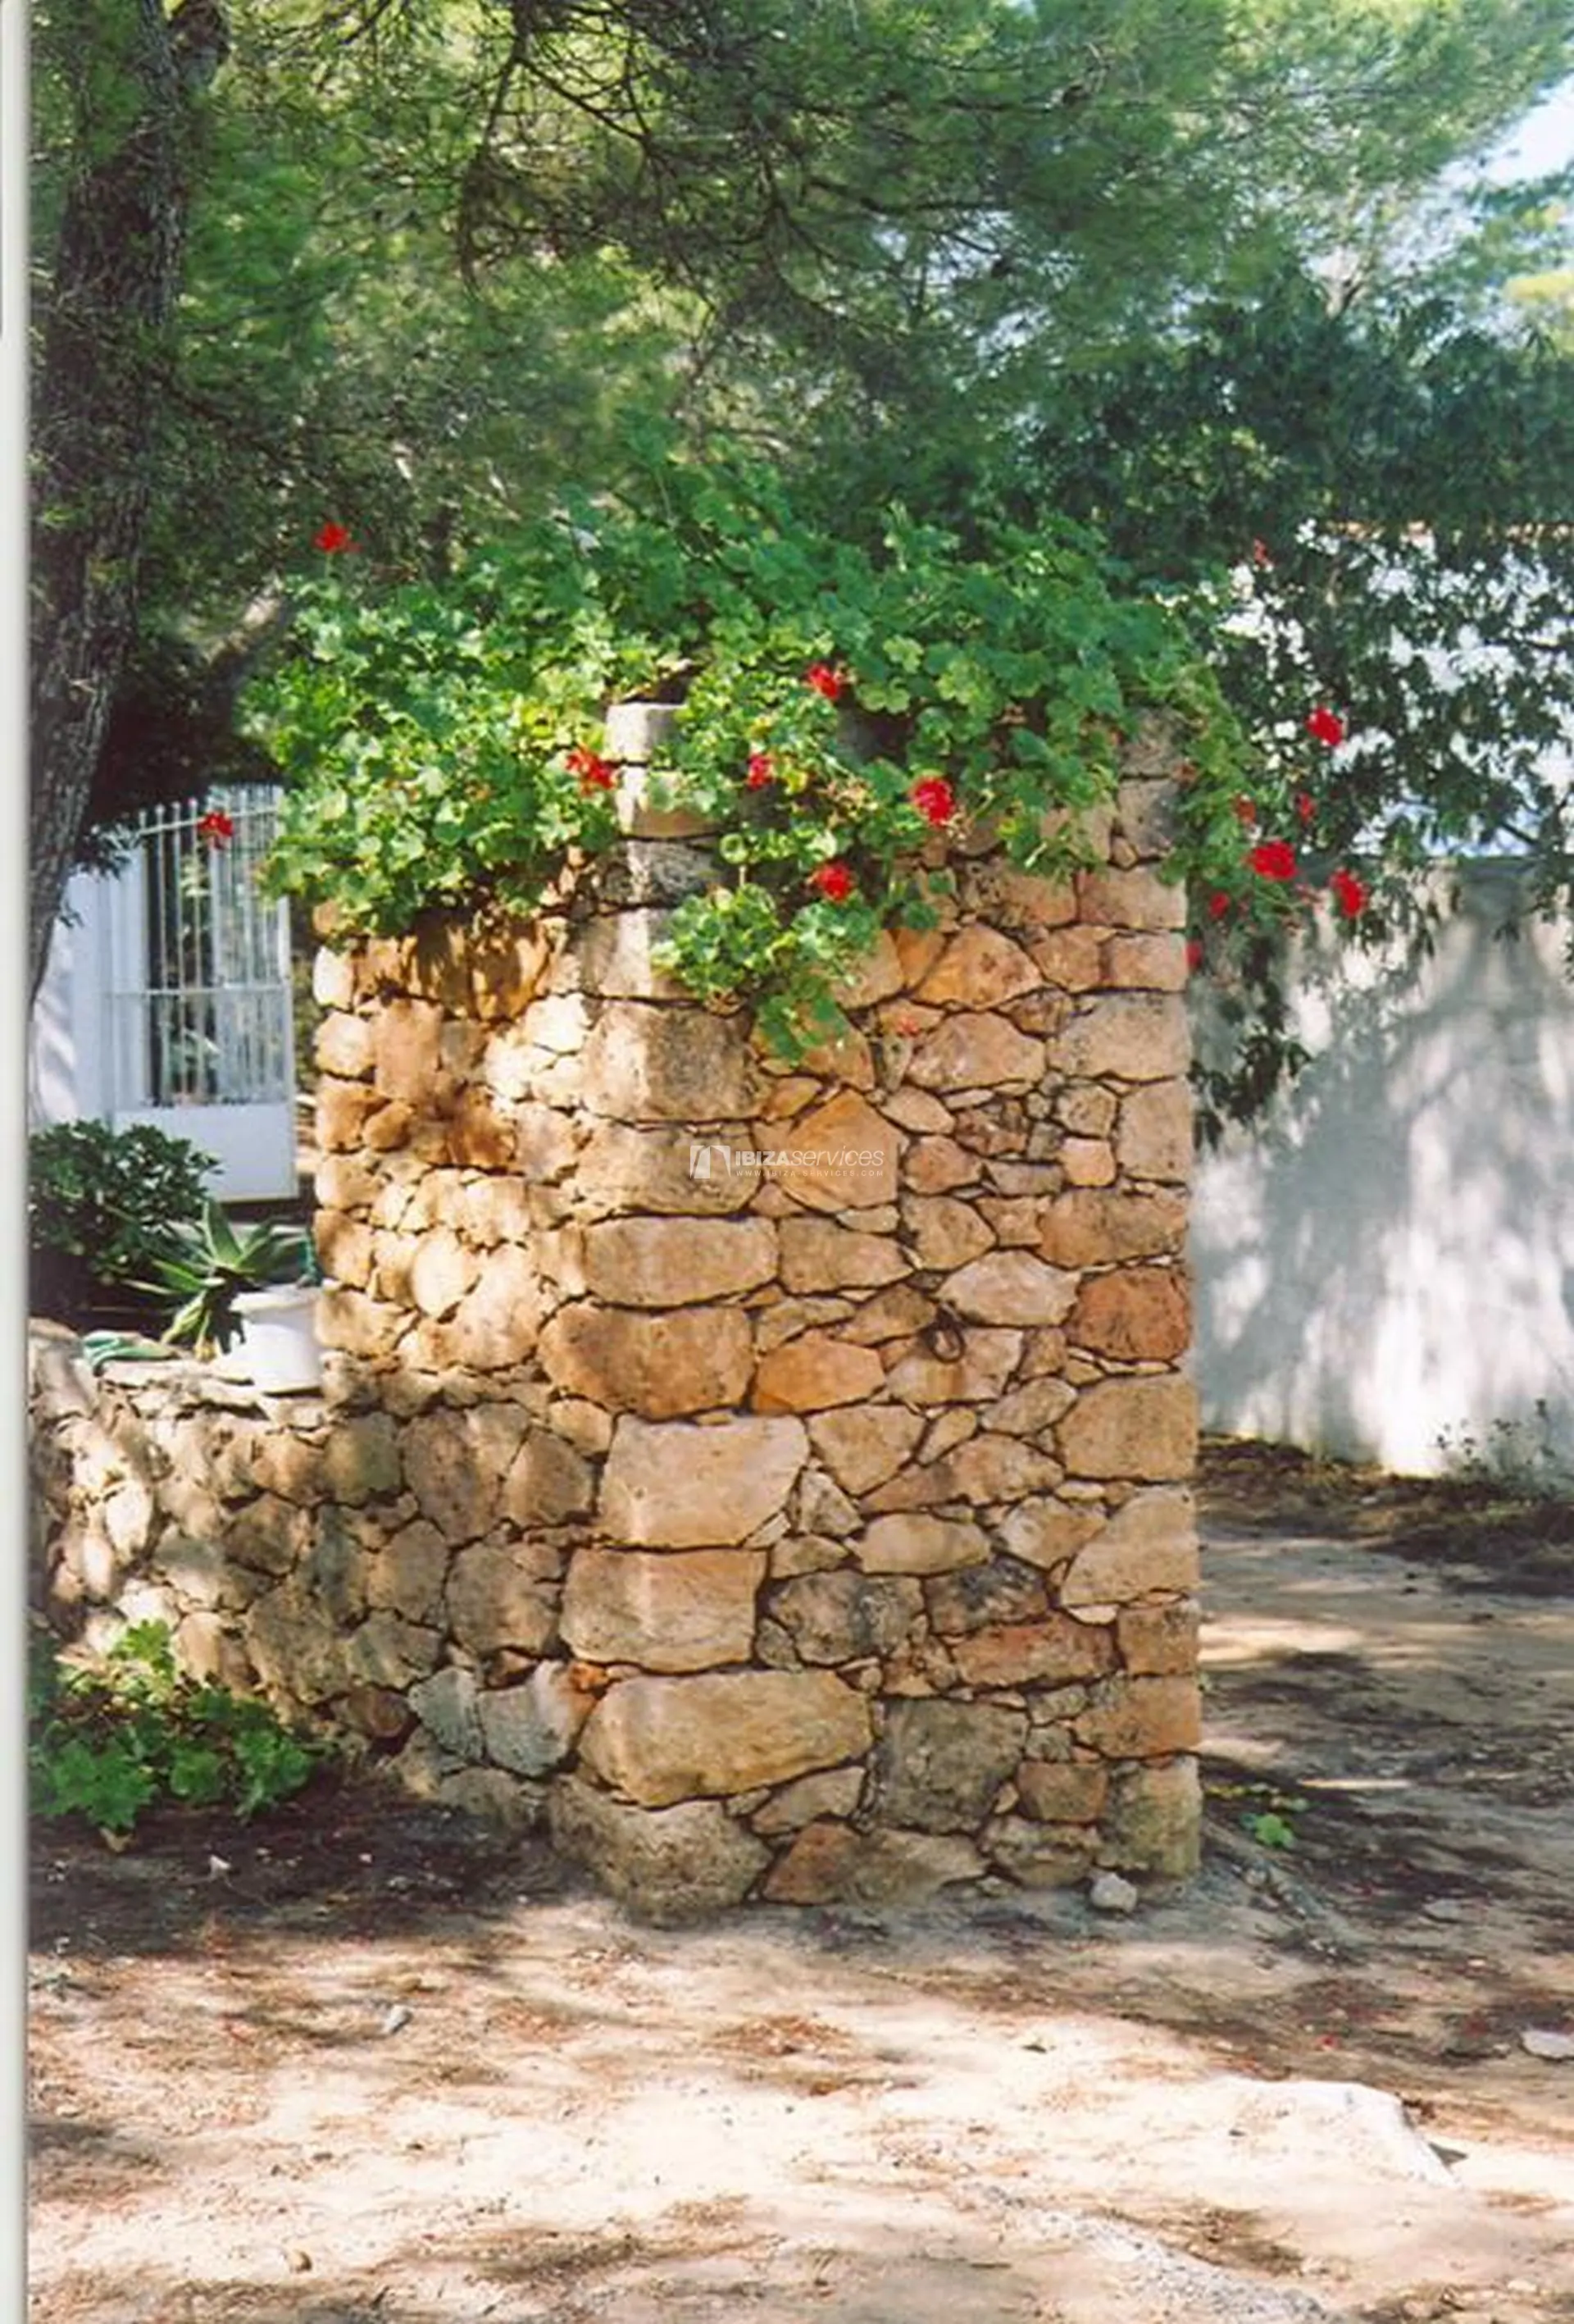 Villa de 4 chambres à louer à Formentera